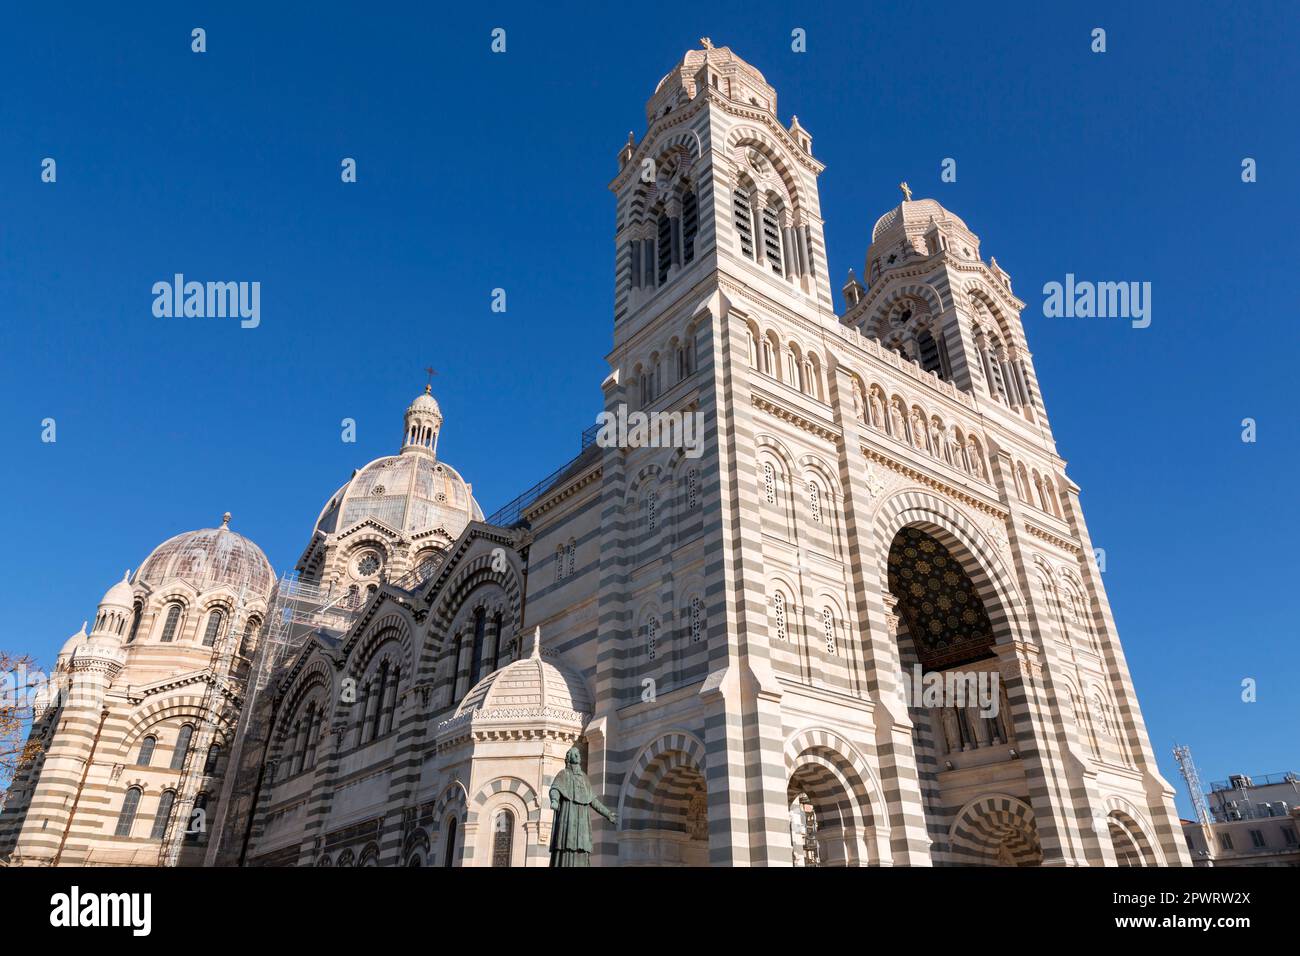 Cathédrale de Marseille, Cathédrale Sainte Marie majeure de Marseille est une cathédrale catholique romaine et un monument national de France, située à Marseil Banque D'Images